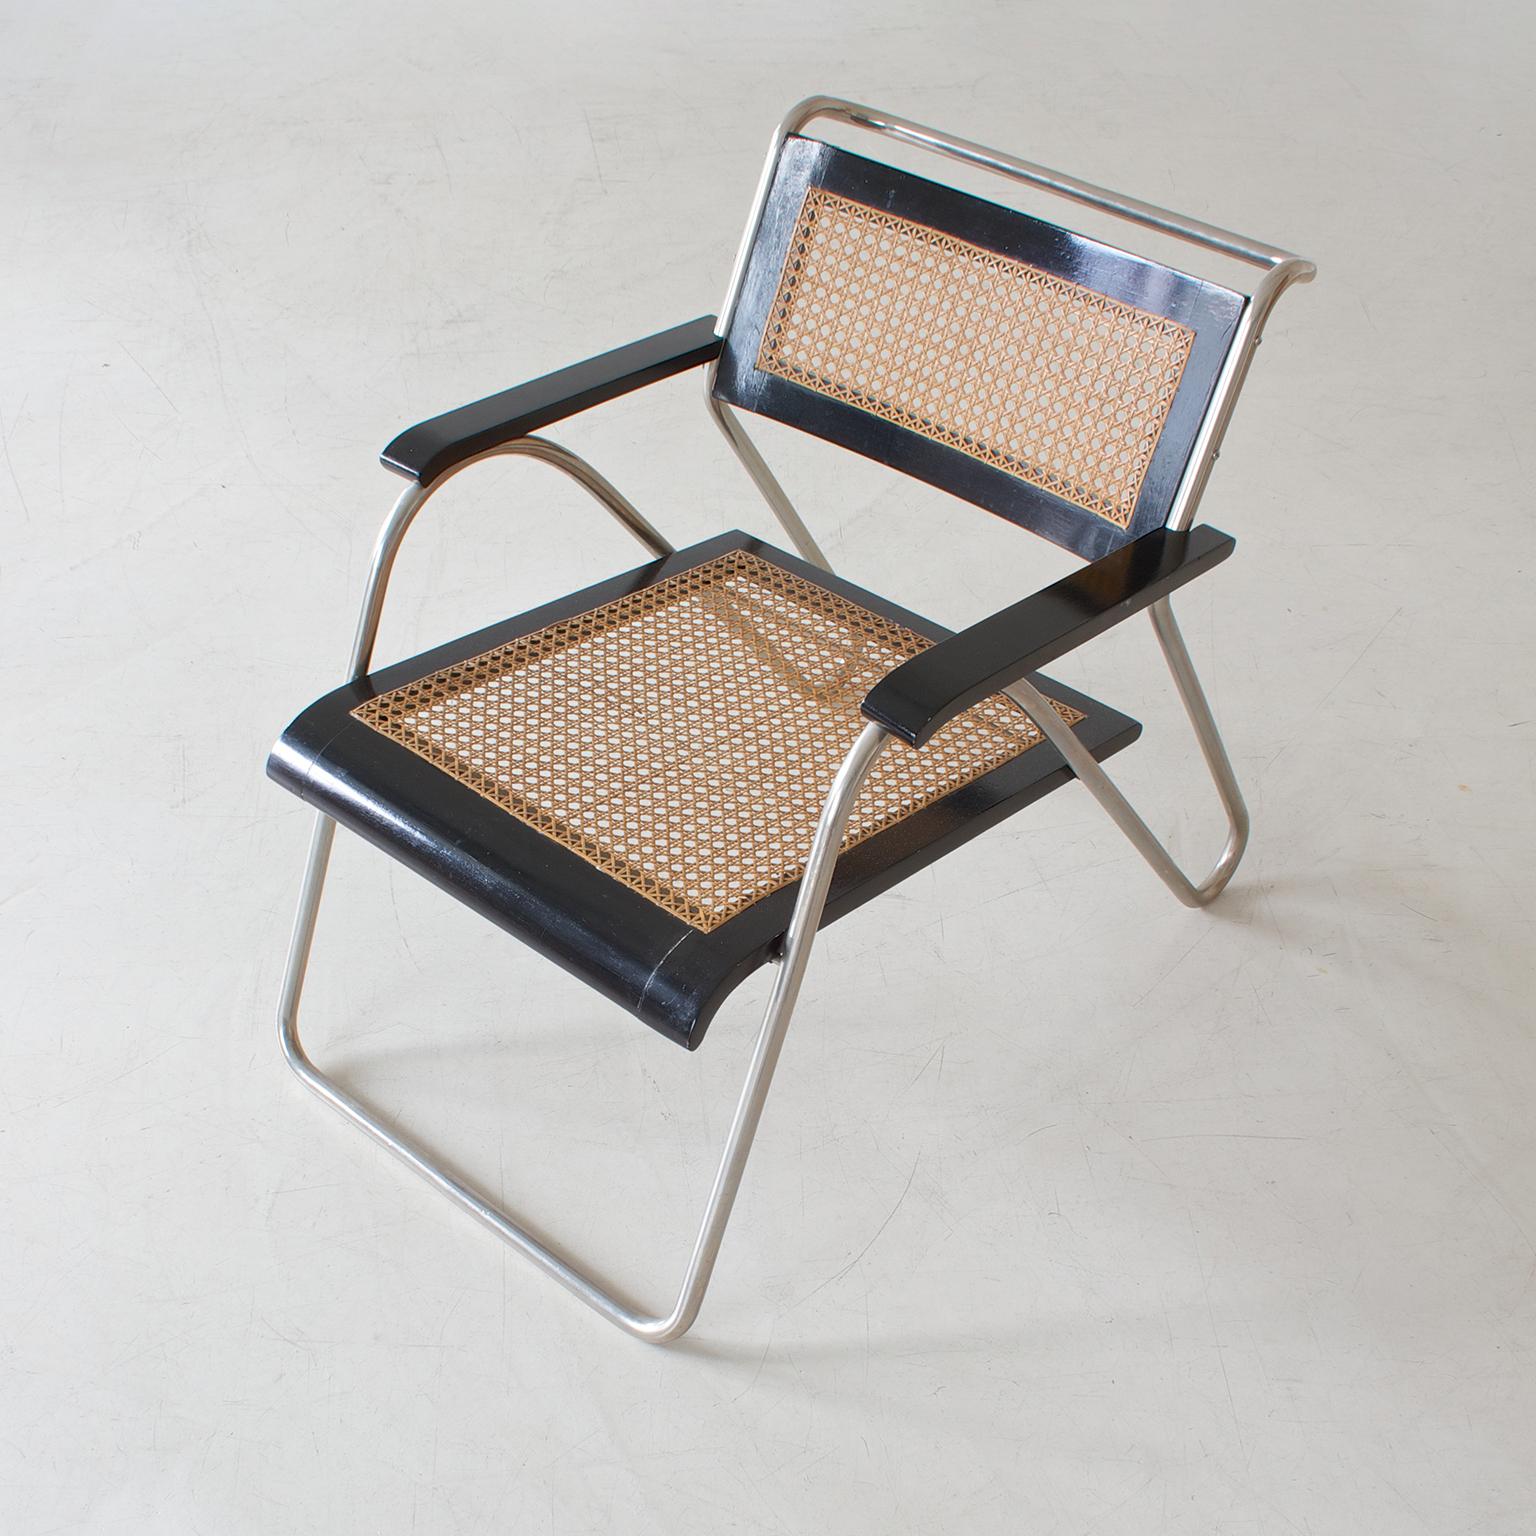 Bauhaus-Sessel aus Stahlrohr von Erich Dieckmann, schwarz lackiertes Holz, 1931 (Beschichtet)